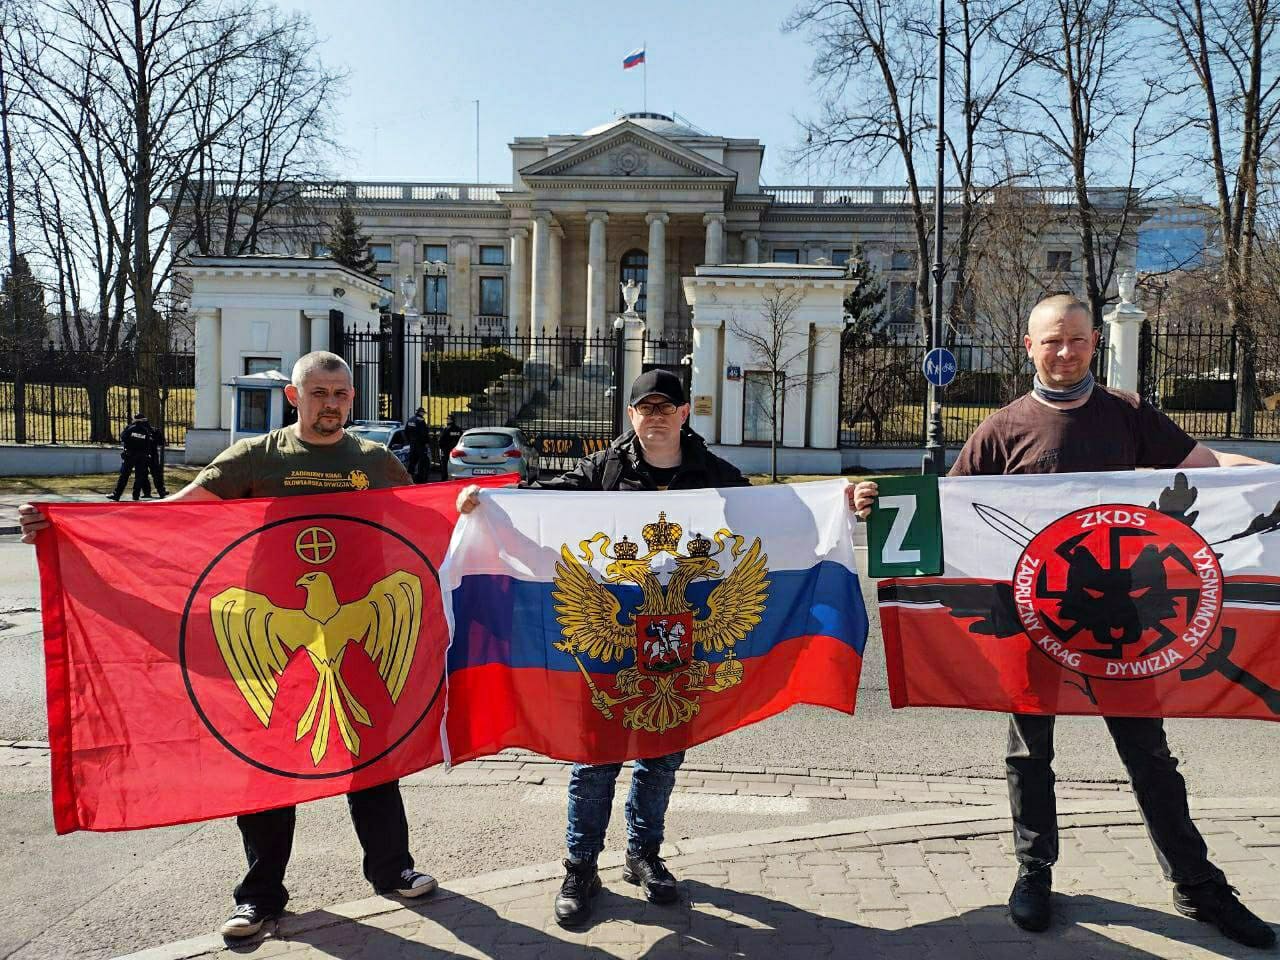 Акция в поддержку России. Польша, Варшава, 25 марта 2022 года.